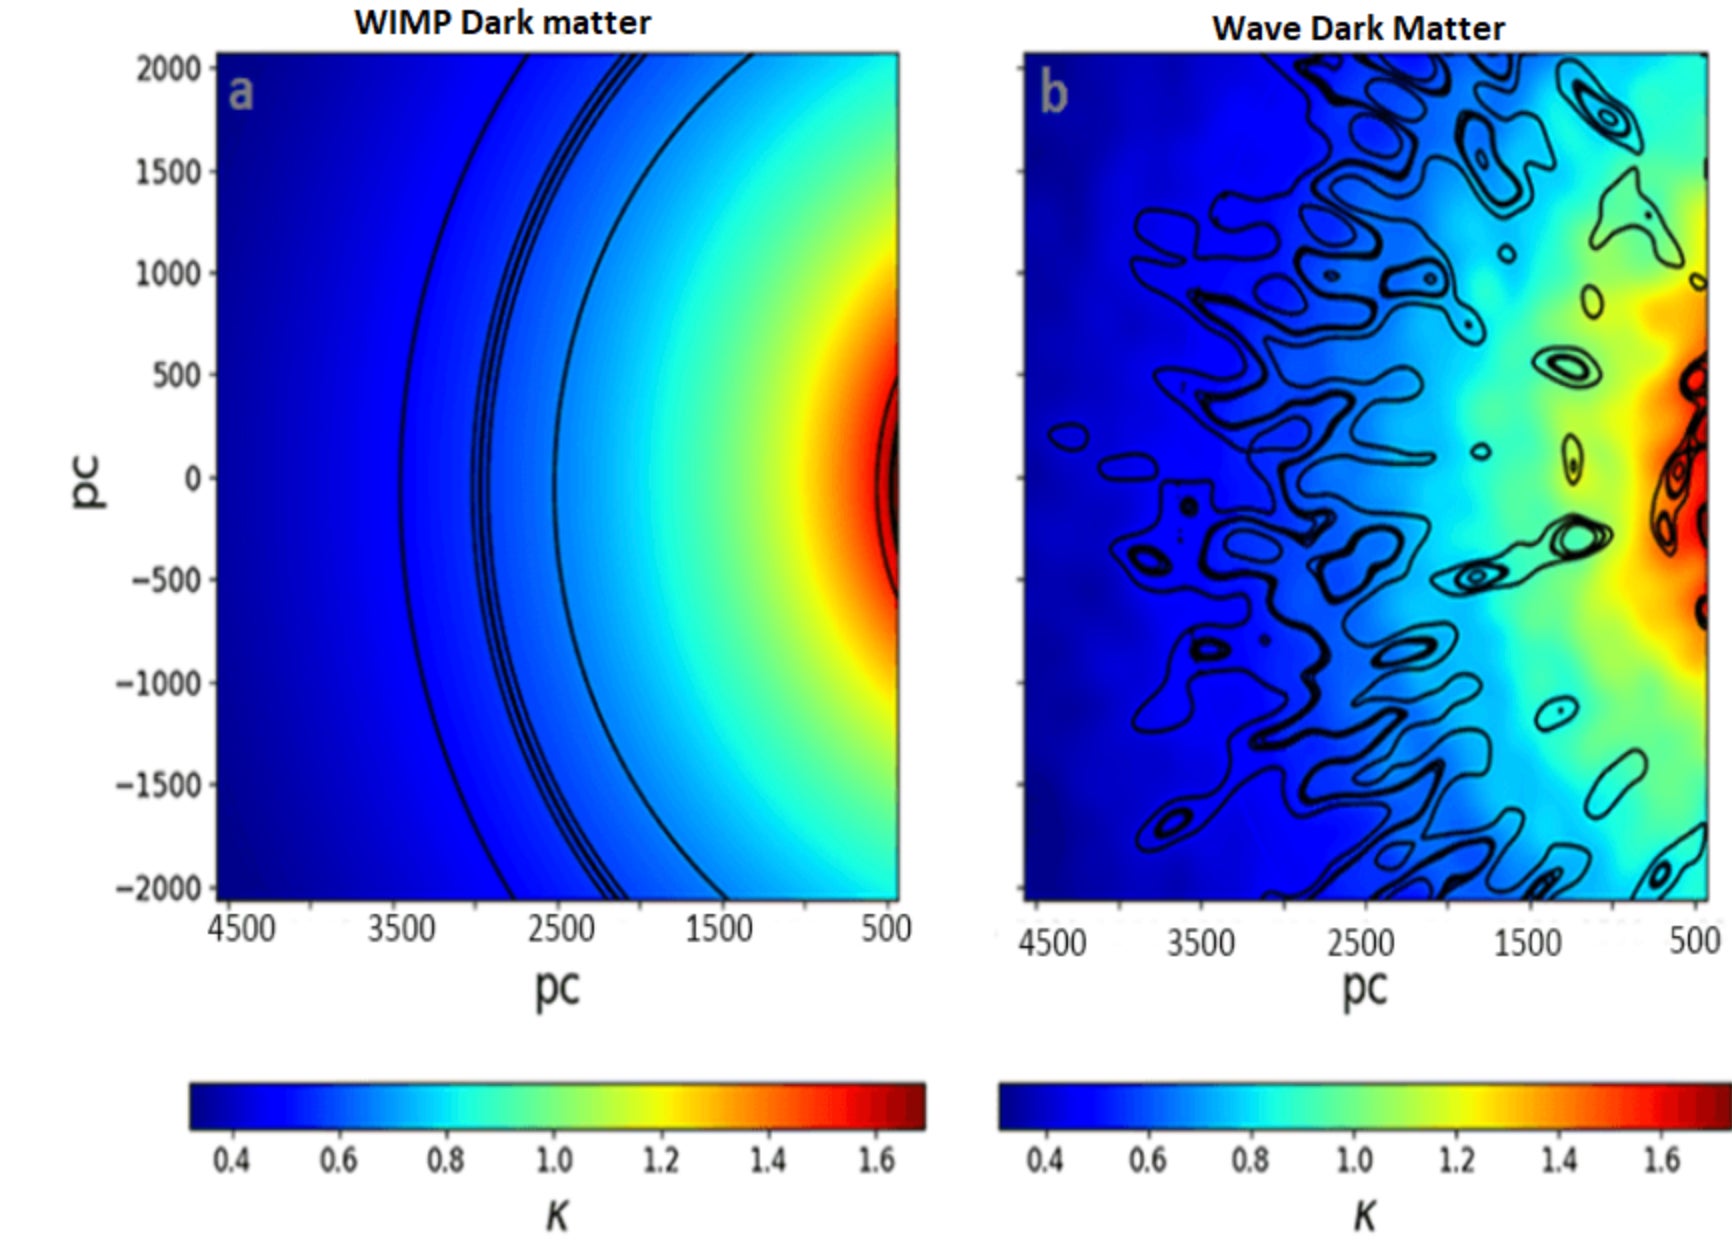 Bords simulés d'anneaux d'Einstein dans les modèles WIMP (à gauche) et de matière noire ondulatoire (à droite).